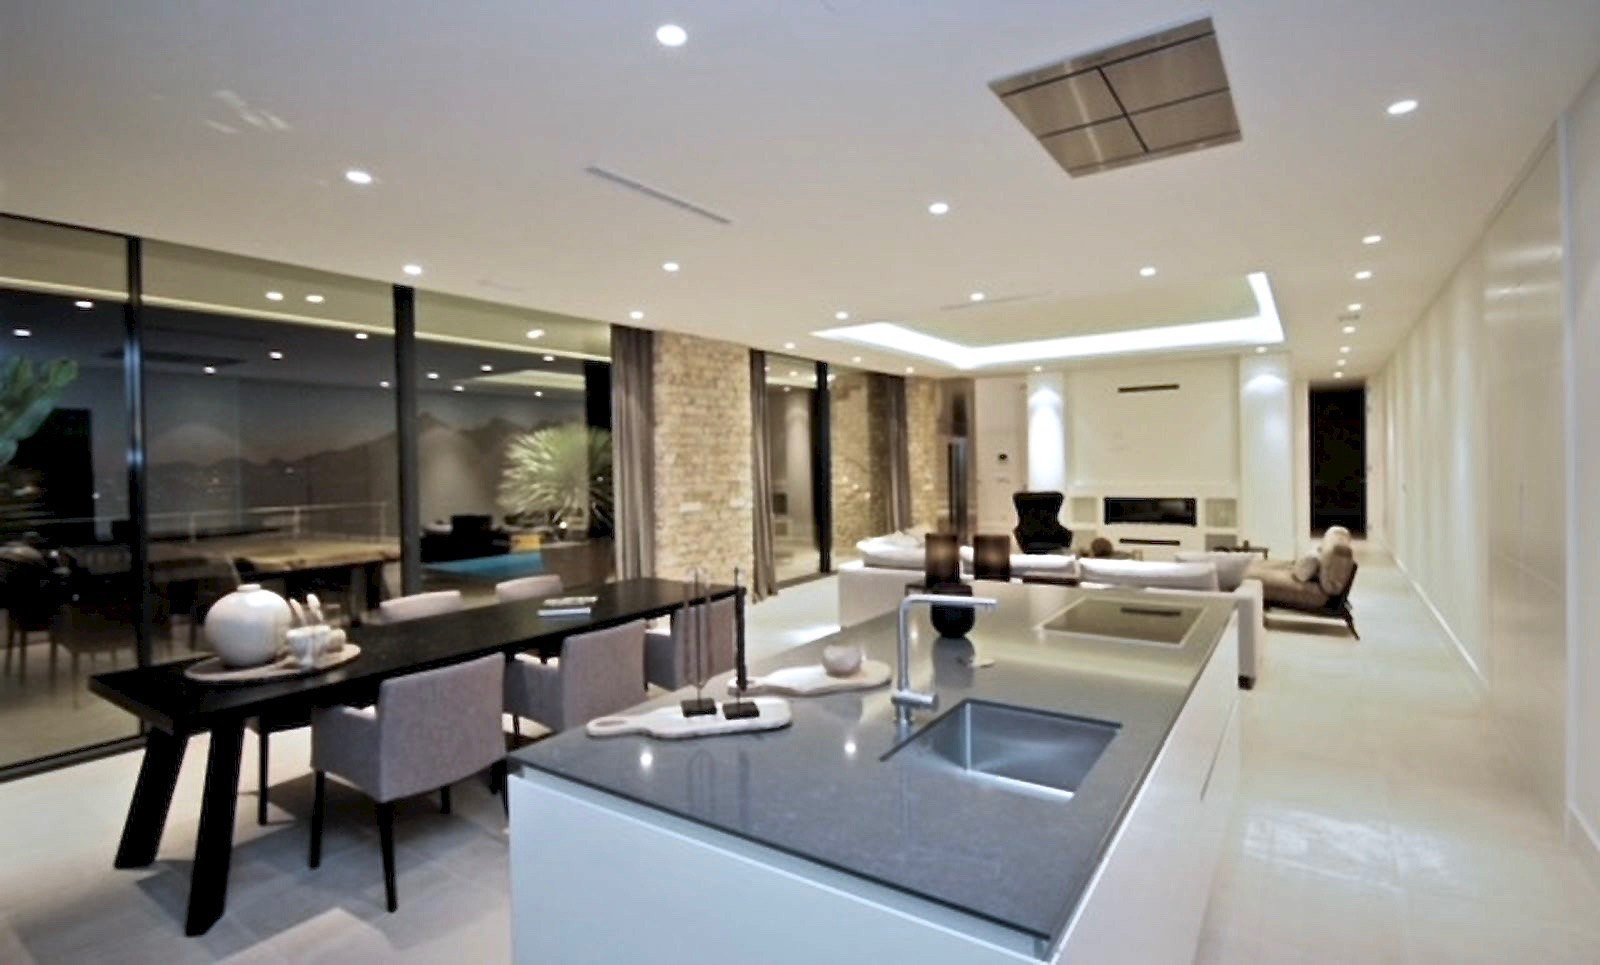 New build Modern Villa for Sale in Altea - Costa Blanca